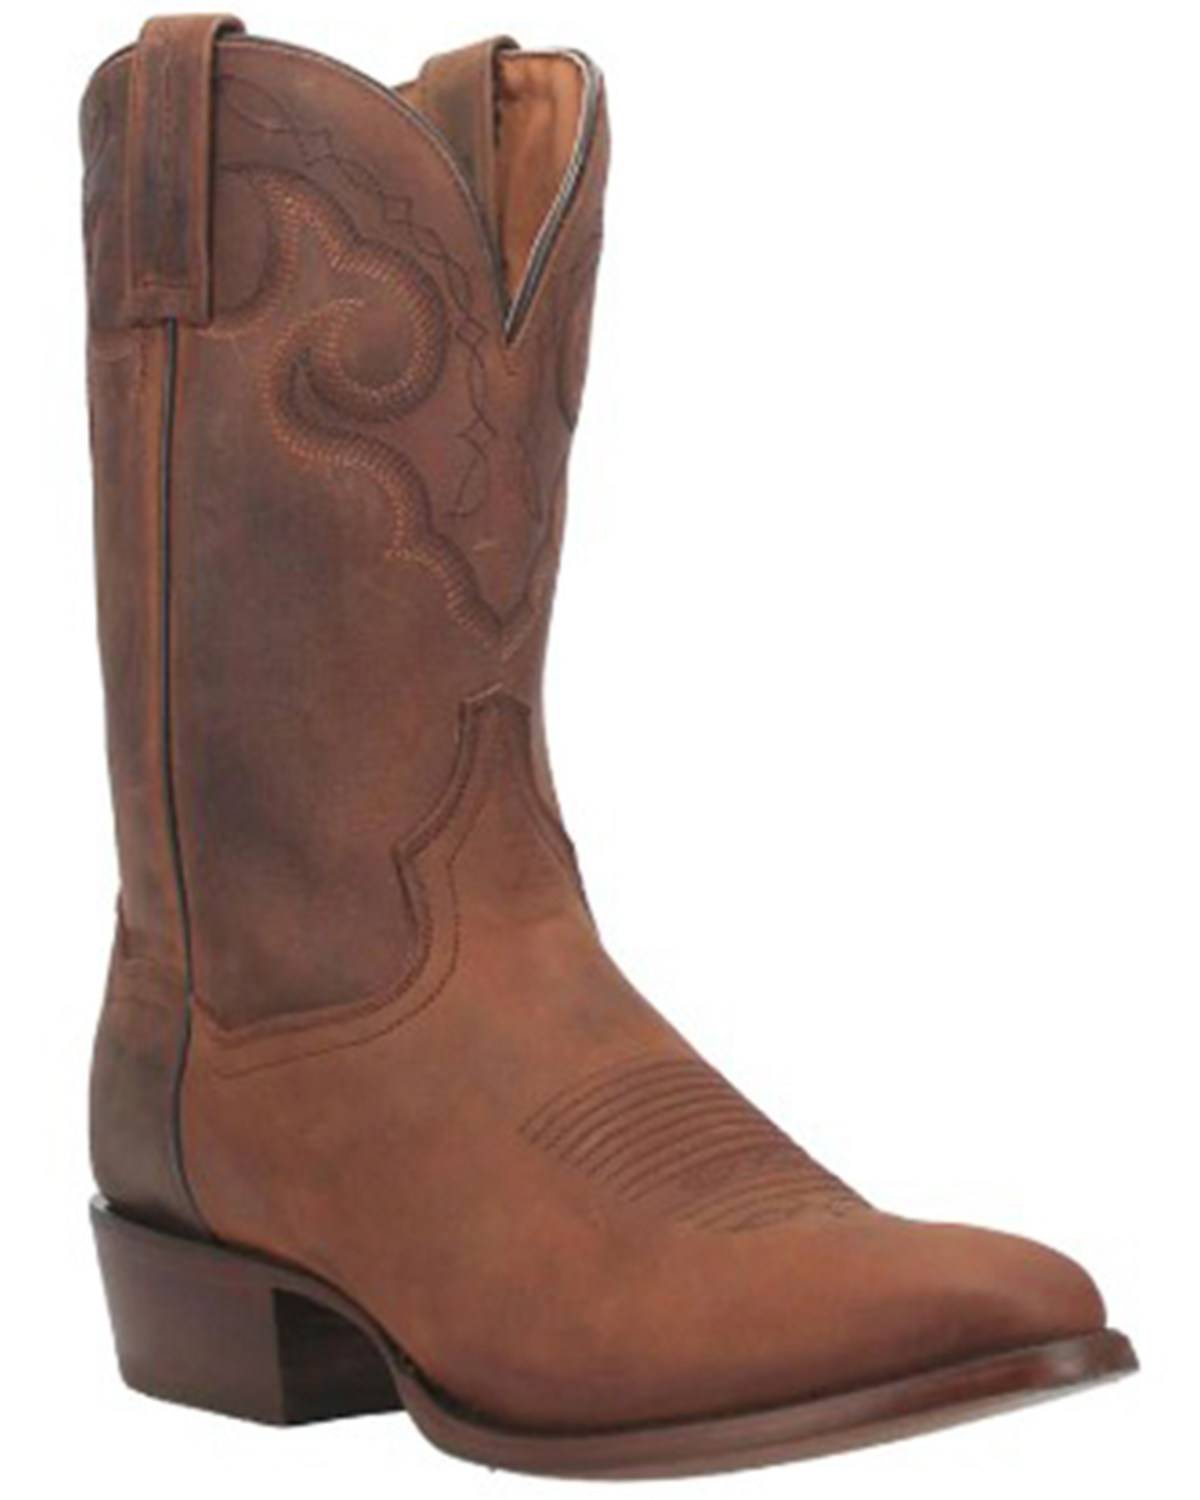 Dan Post Men's 11" Simon Western Boots - Medium Toe